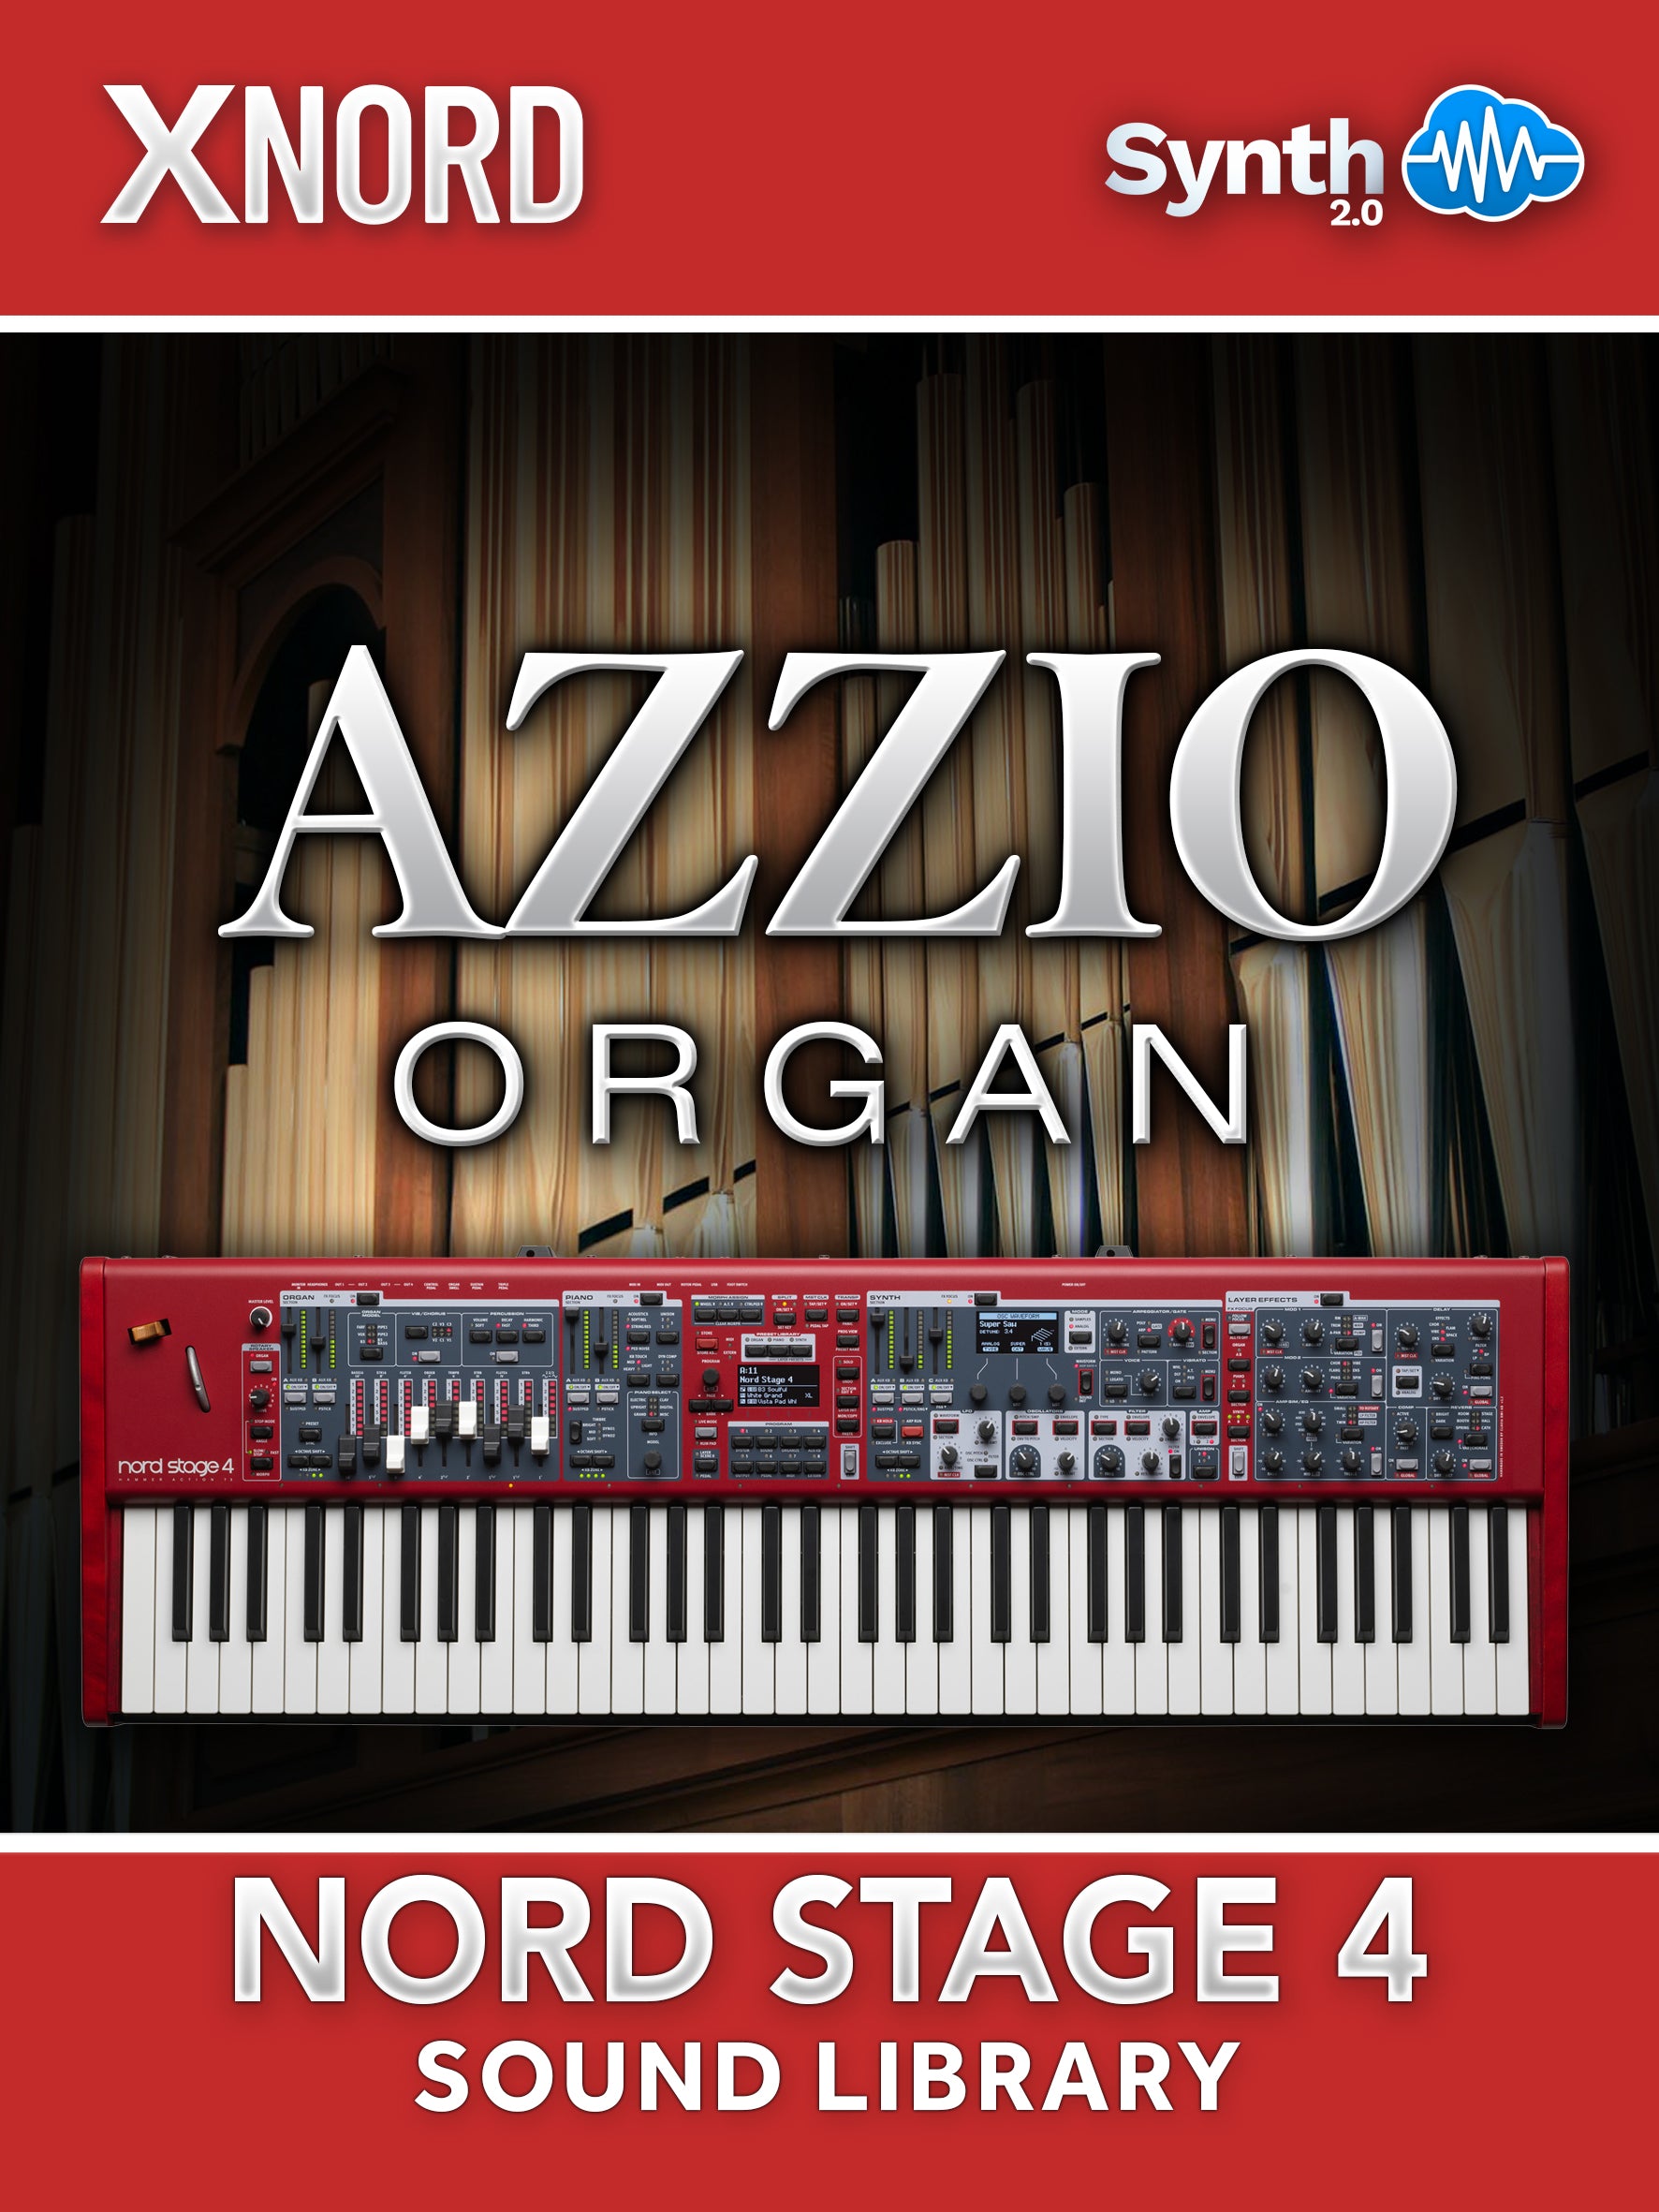 RCL012 - ( Bundle ) - Alessandria Organ + Azzio Organ - Nord Stage 4